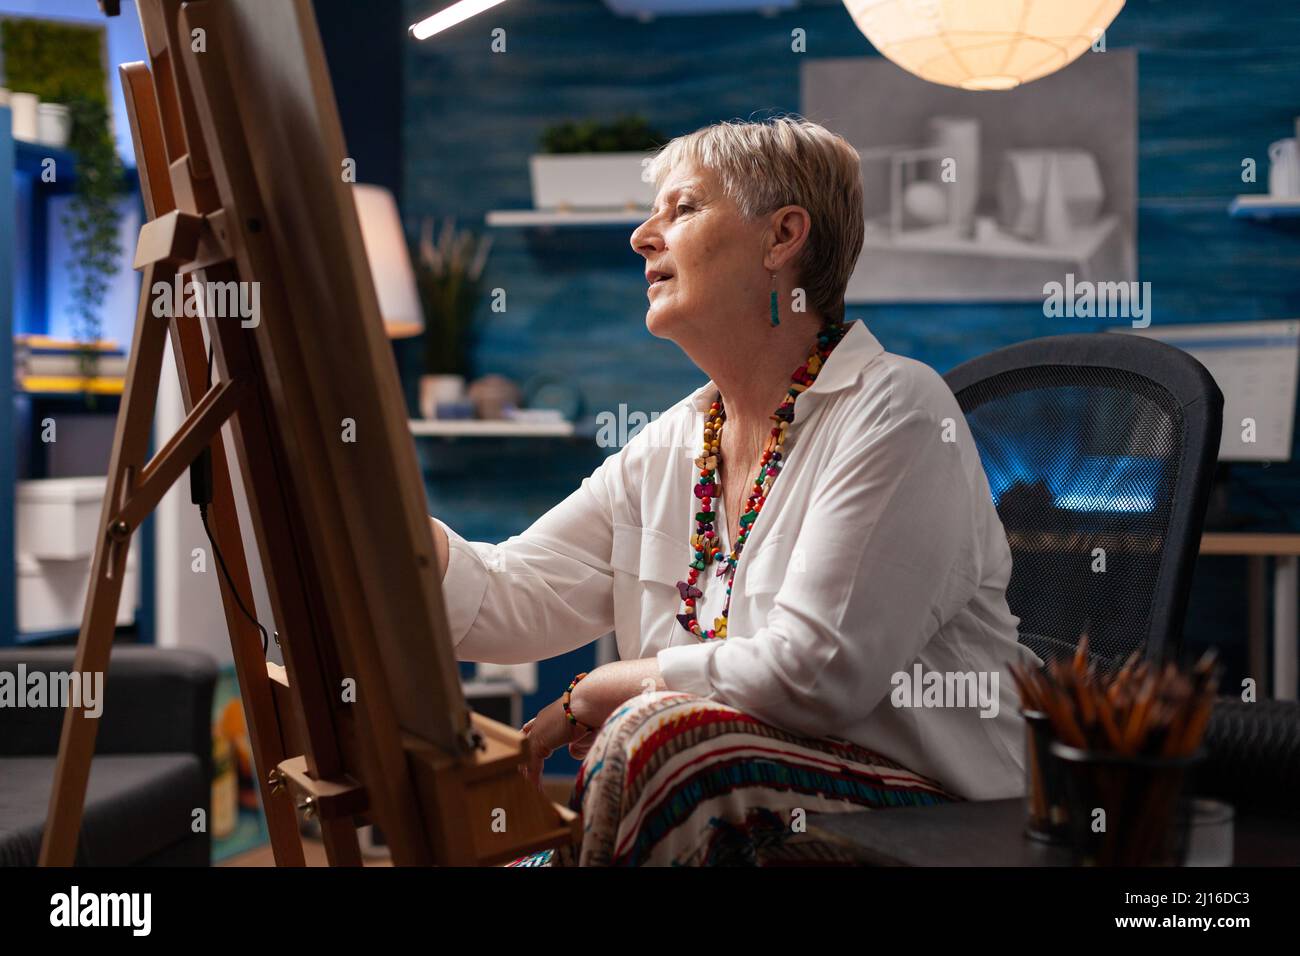 Portrait eines inspirierten Künstlers im Ruhestand vor der Staffelei, der mit Bleistift ein Meisterwerk der kreativen Kunst zeichnet, während er sich hinsetzte. Fokussierte ältere Frau, die im Heimstudio Kohlezeichnungen auf Papier erstellt. Stockfoto